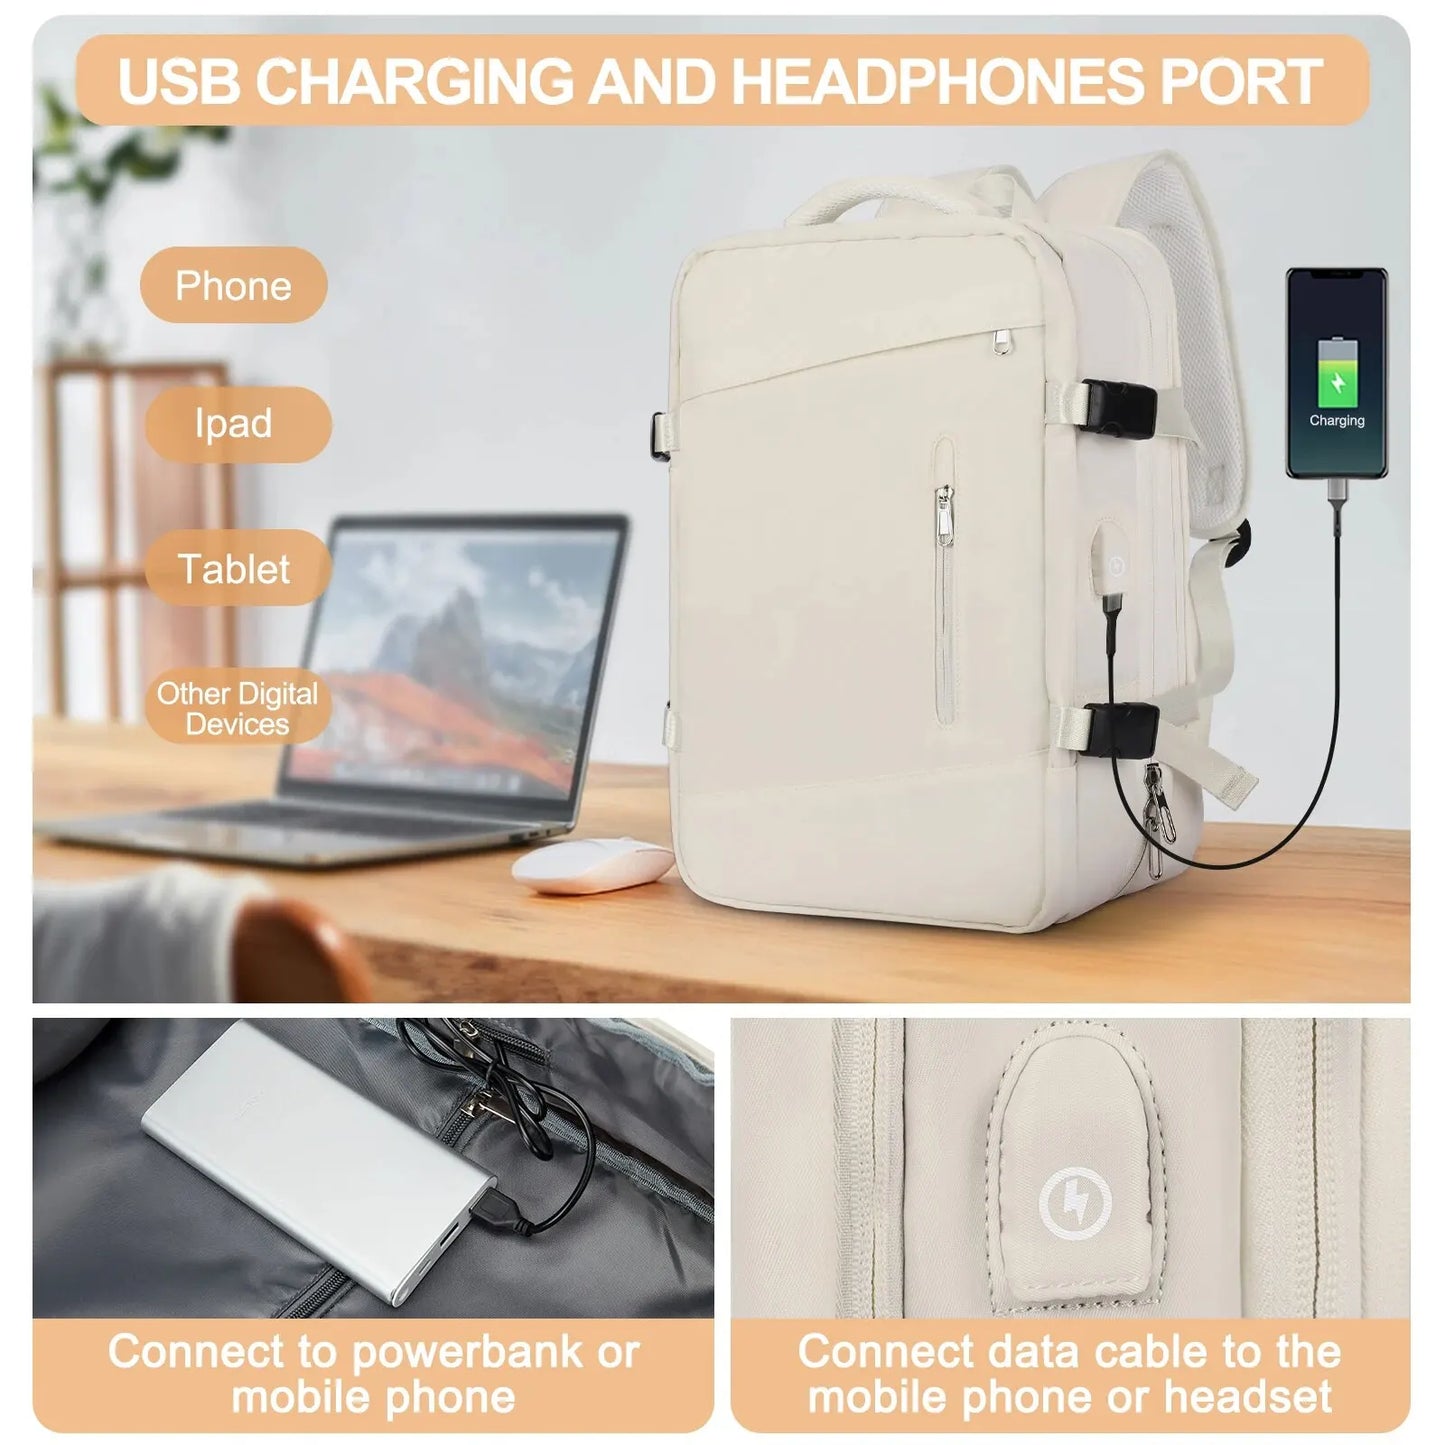 Likros utazási hátizsák a nők számára kibővíthető Weekender túrázási laptop hátizsák USB Port nagy vízálló 40L férfi hátizsákkal